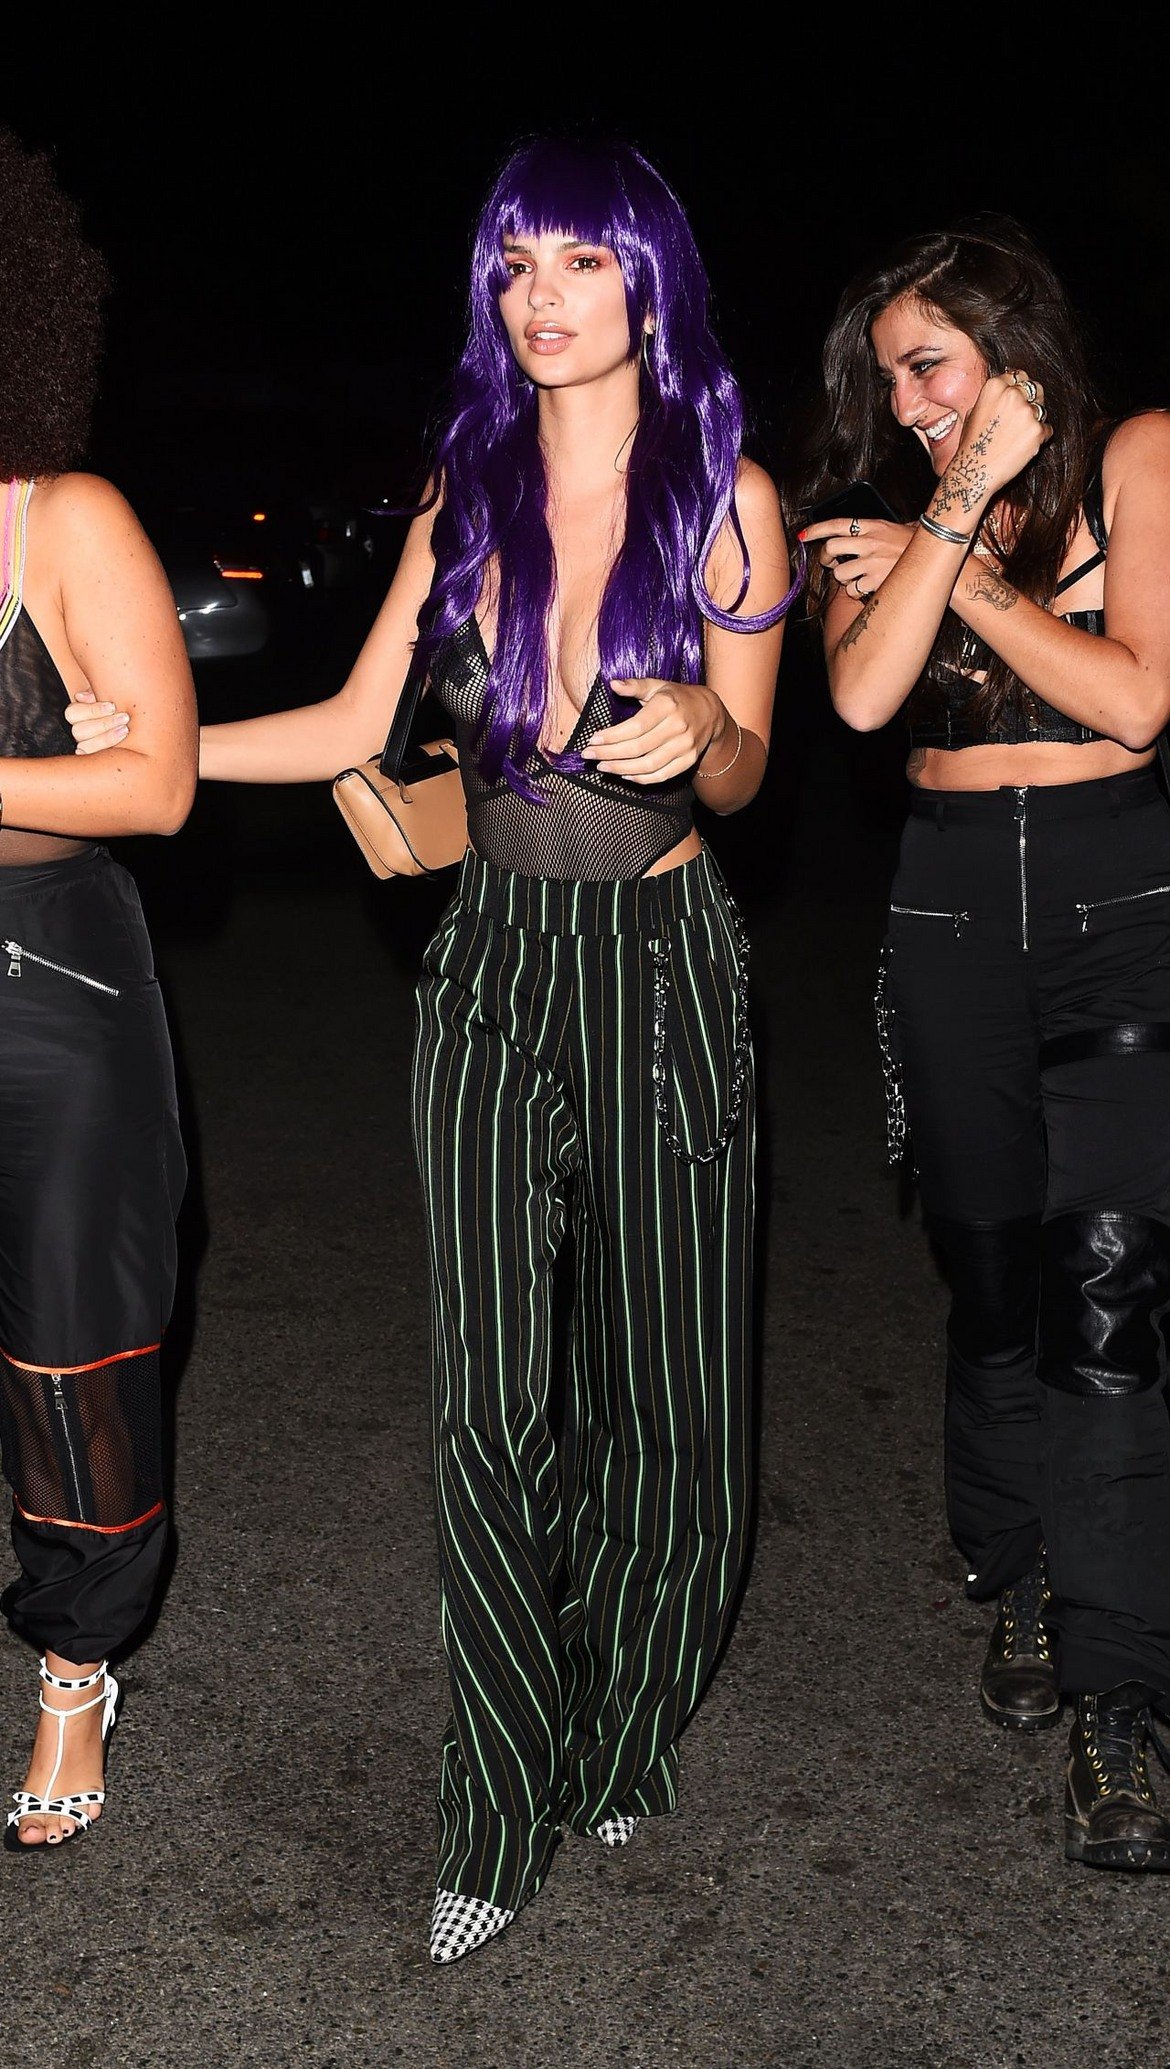  Супермоделът Емили Ратайковски 

Емили се появи с този костюм на Хелоуин парти в Лос Анджелис. Тя прикова всички погледи и то не само заради ярко лилавата перука...